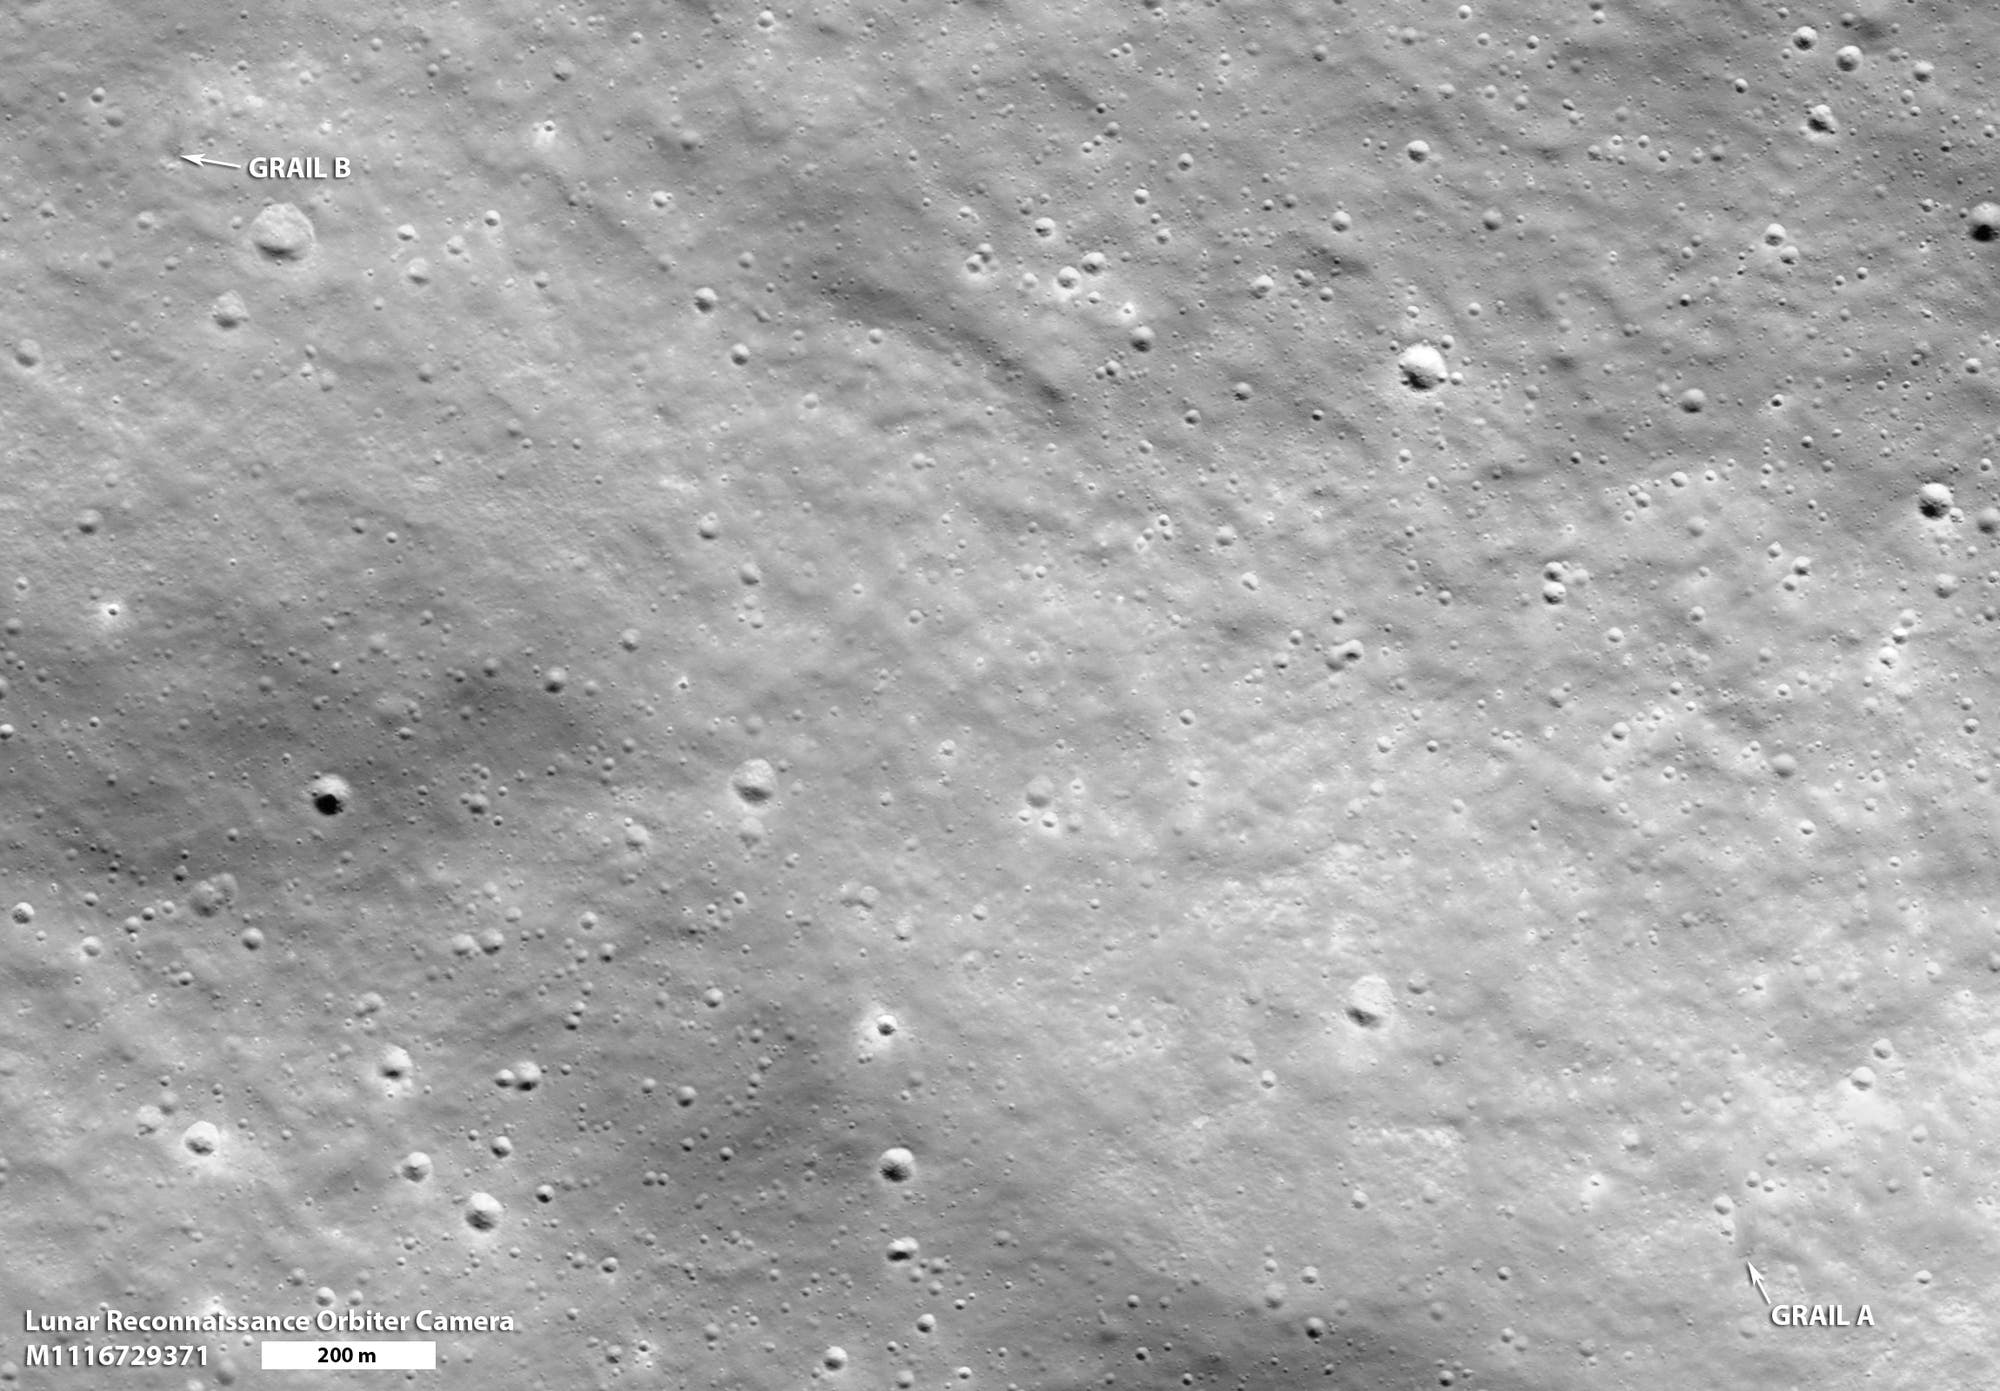 Die Einschlagkrater der beiden GRAIL-Mondsonden II